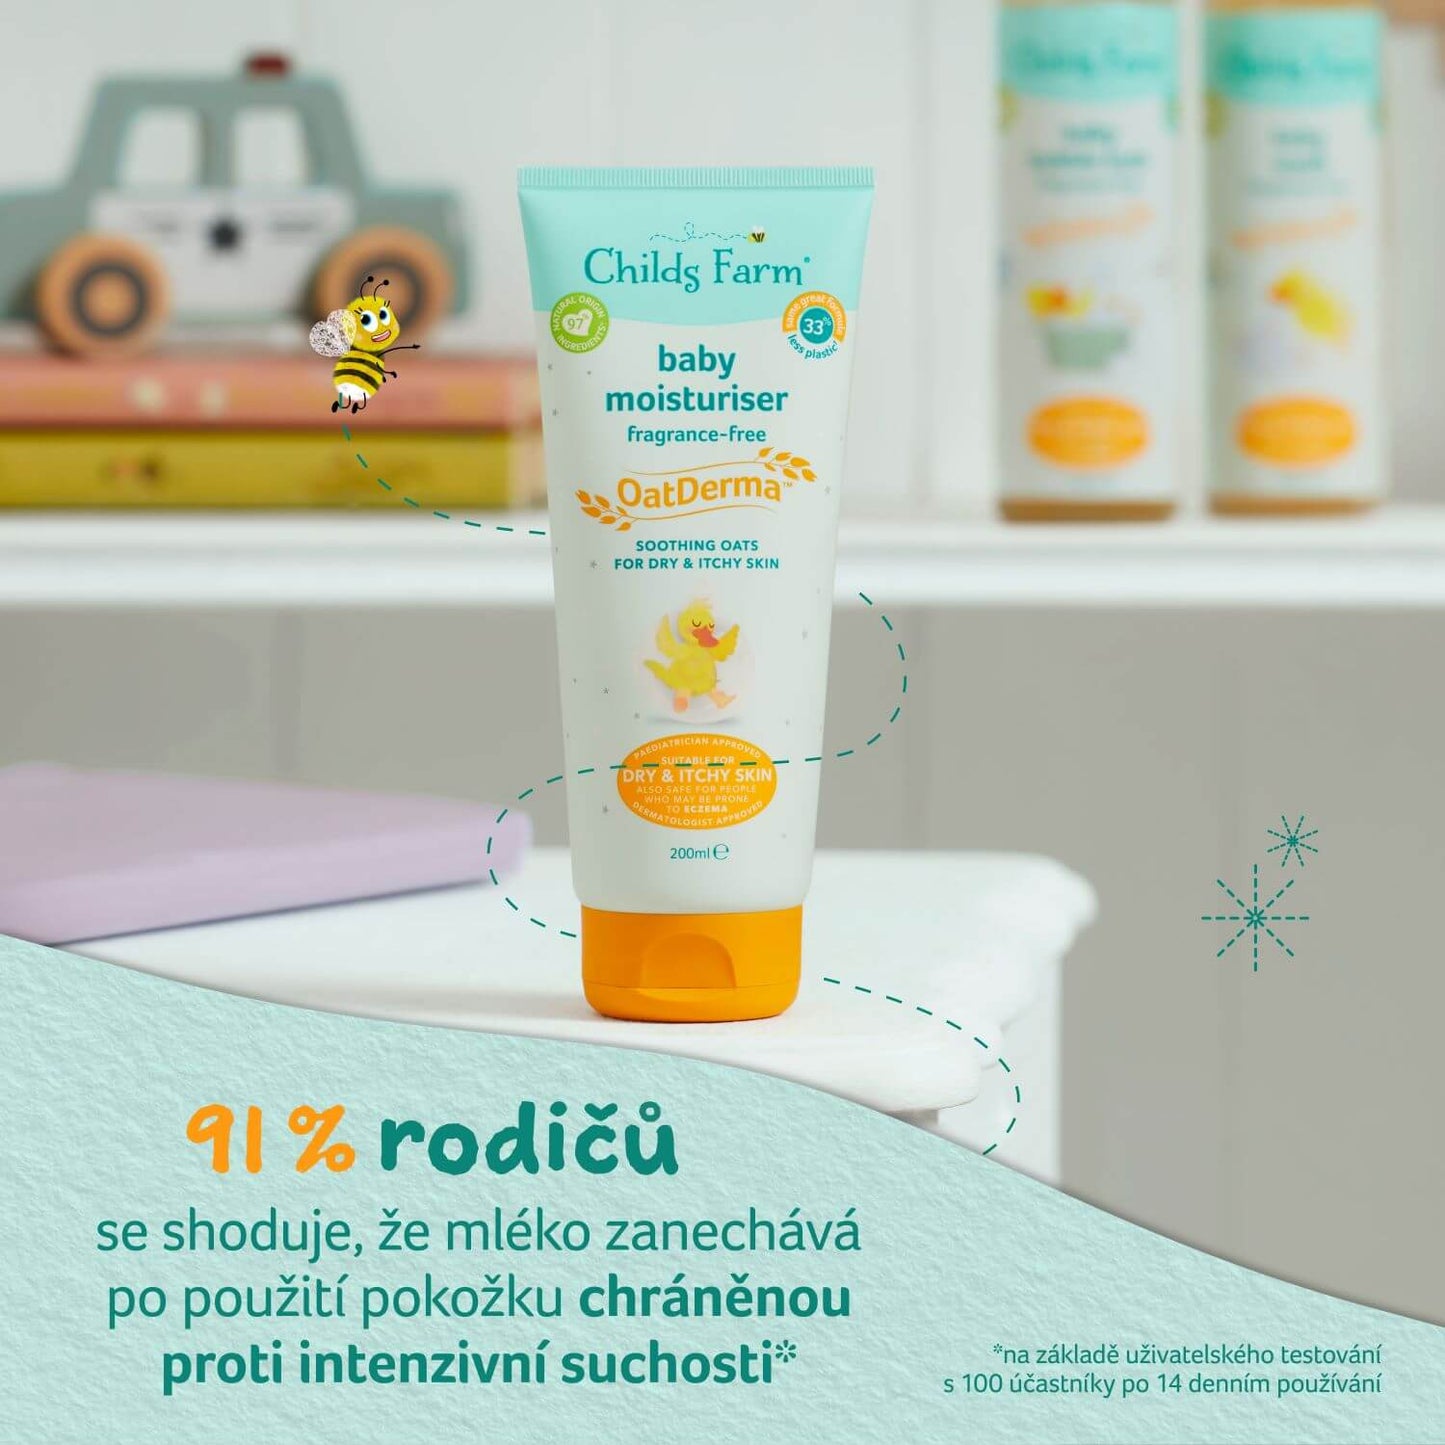 Childs Farm OatDerma™ baby moisturiser fragrance-free